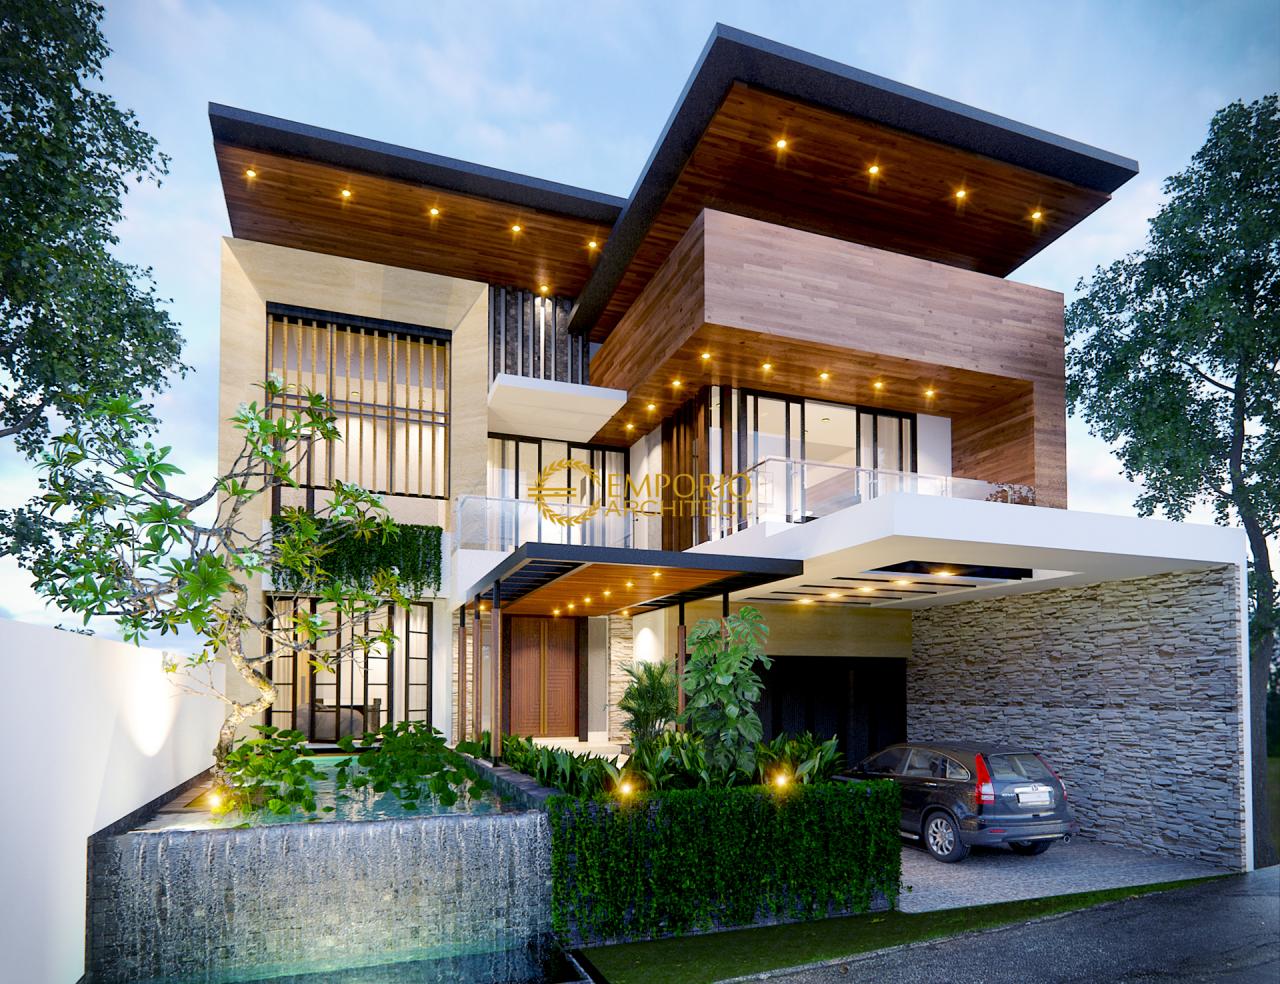 24 Model Desain Rumah Minimalis Karya Arsitek Indones - vrogue.co